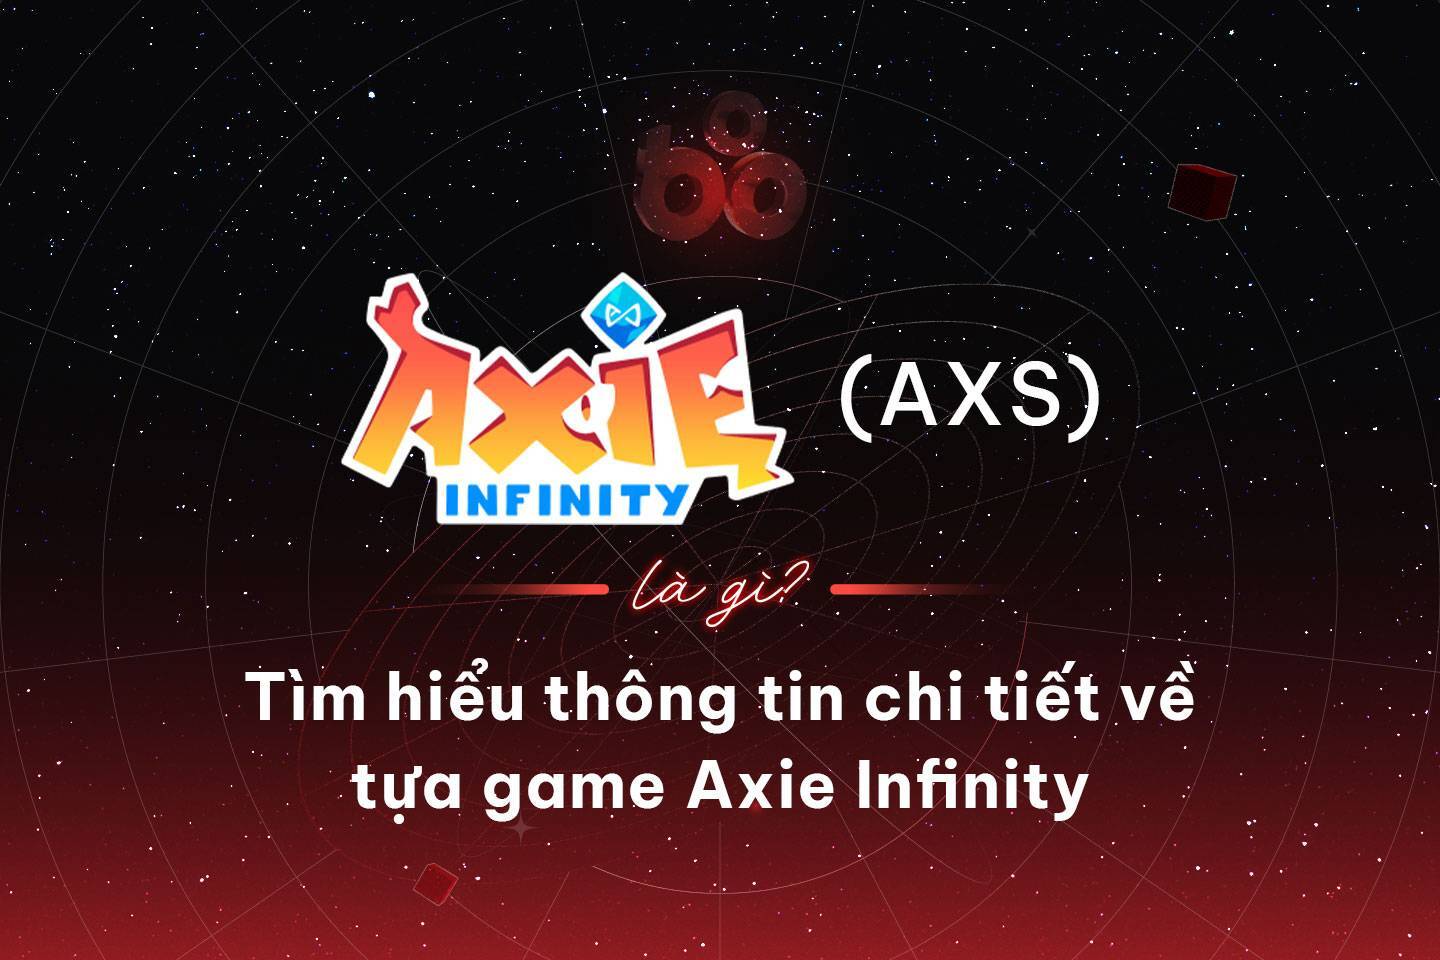 Axie Infinity axs Là Gì Tìm Hiểu Thông Tin Chi Tiết Về Tựa Game Axie Infinity